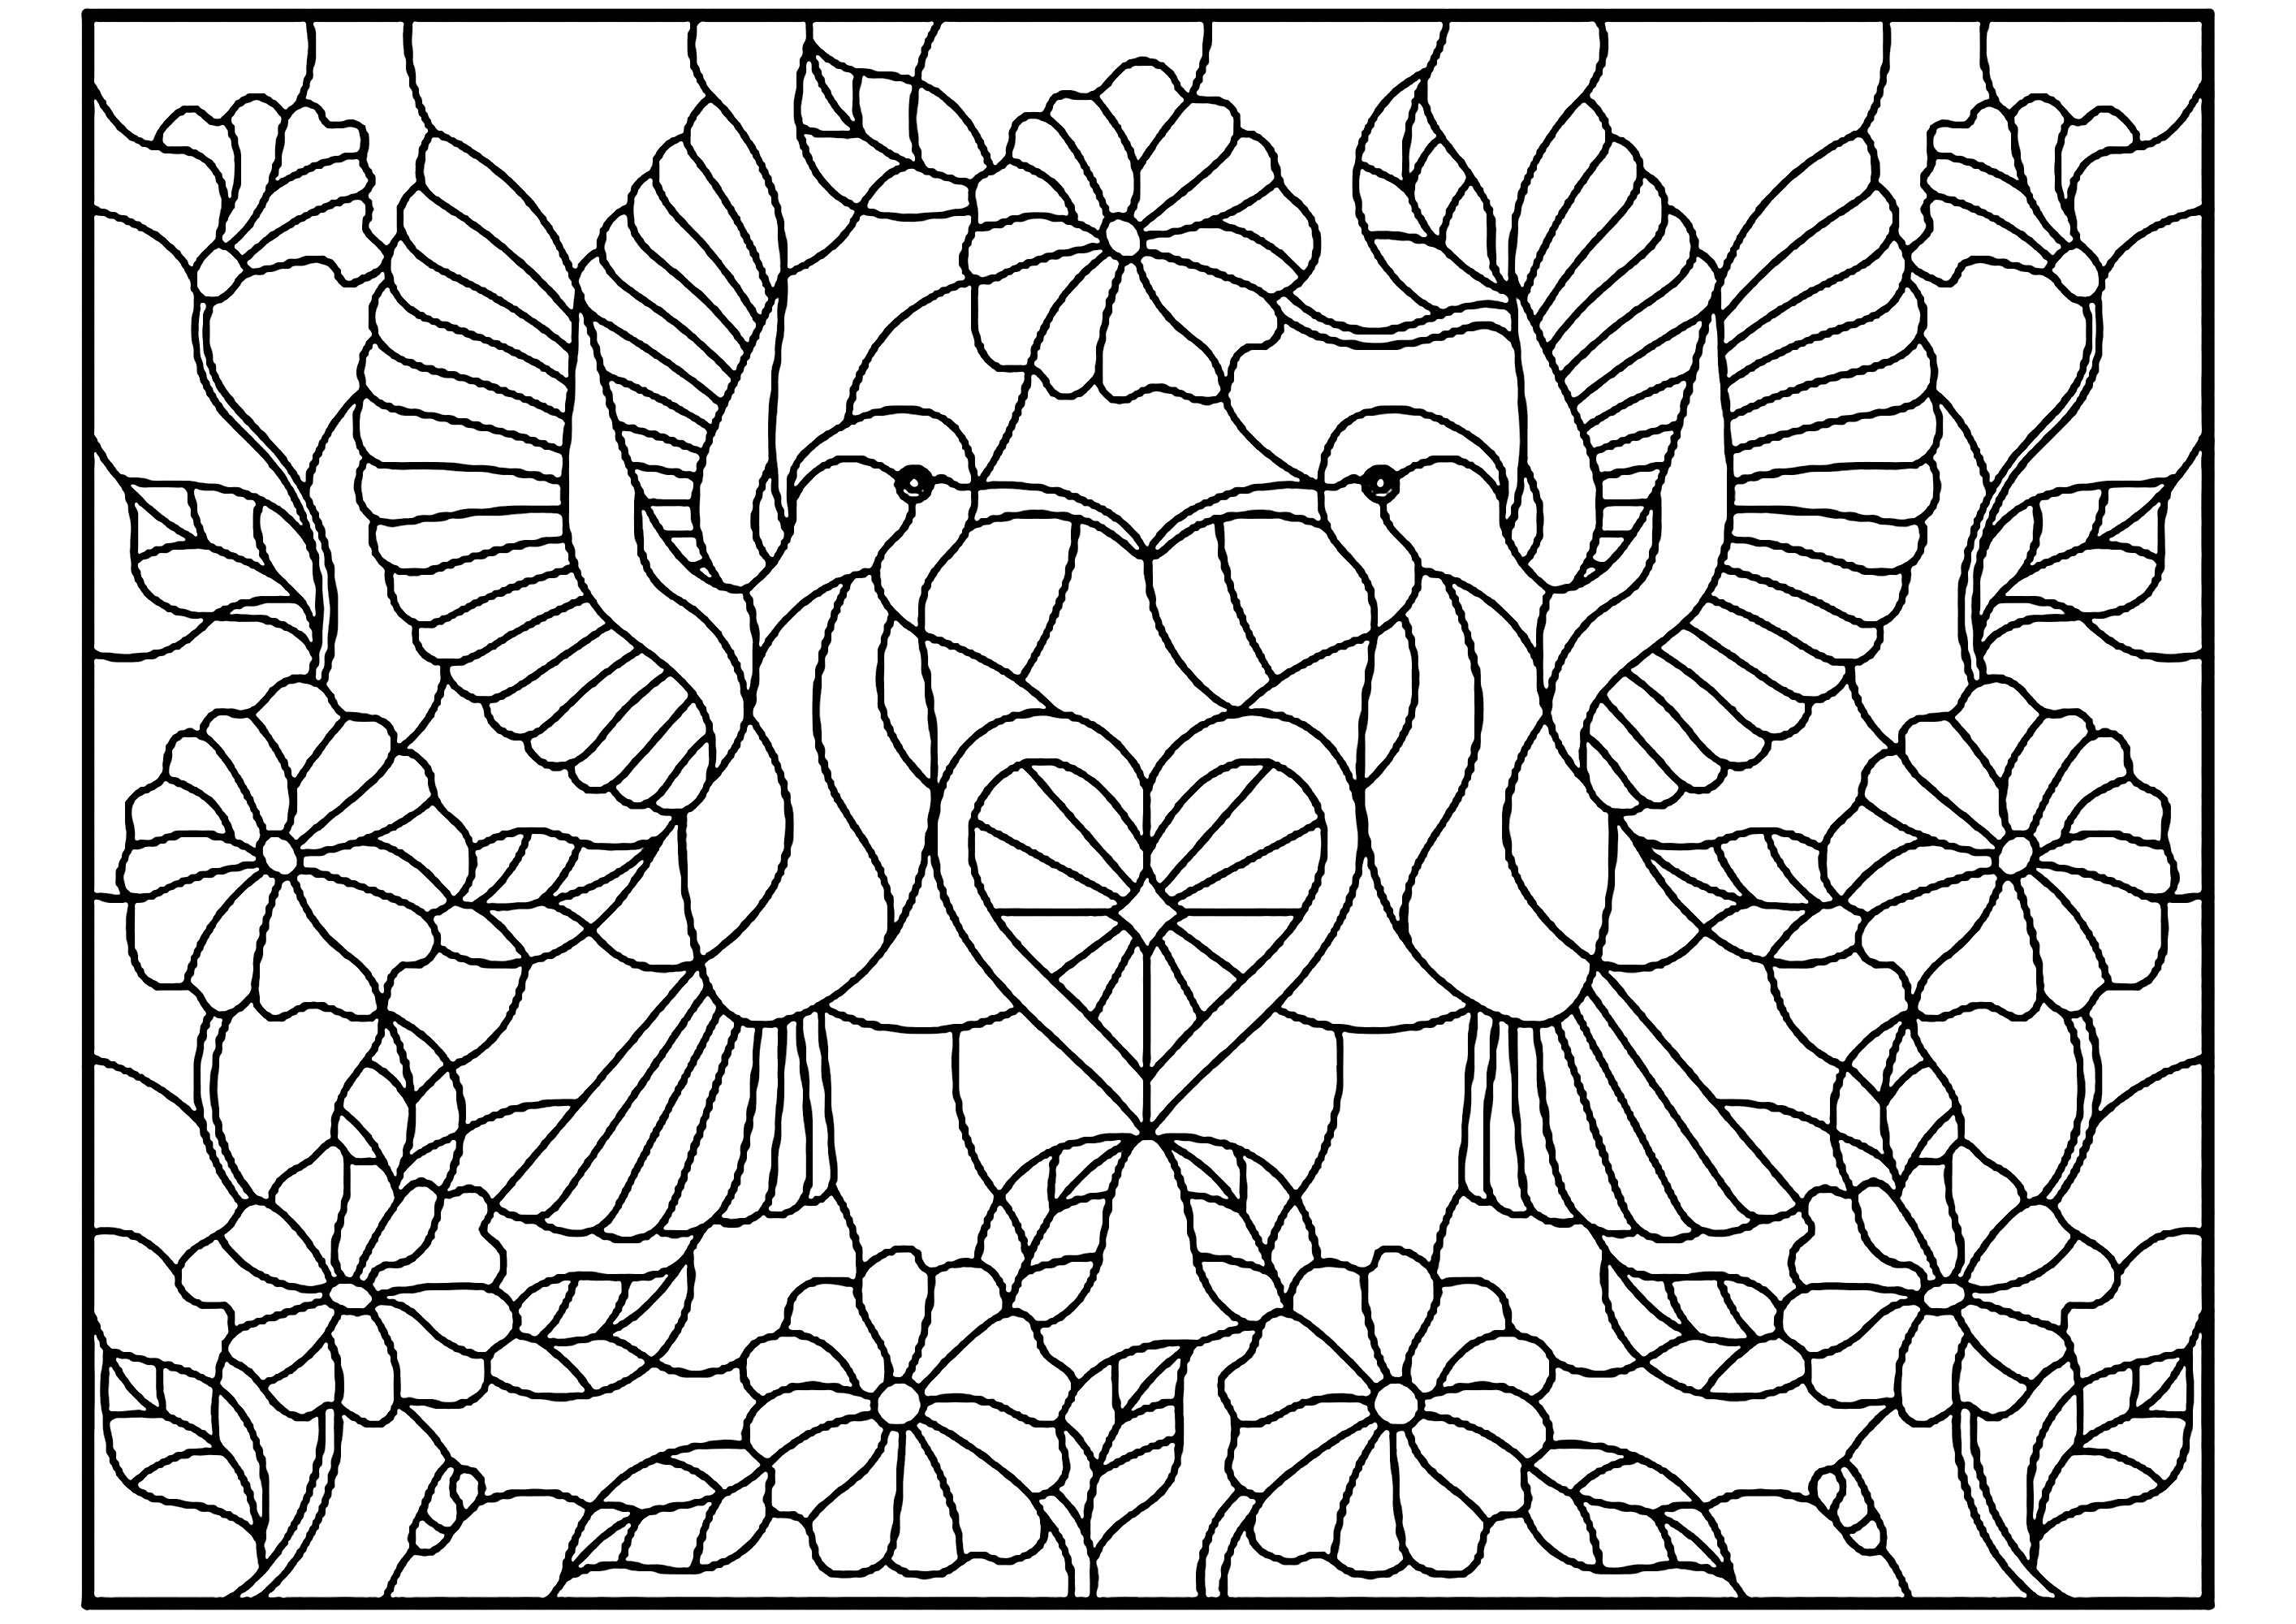 Due uccelli e un piccolo cuore al centro, stile vetro colorato. Una simmetria perfetta per uno schema di colorazione che produrrà senza dubbio un risultato finale eccezionale, Fonte : 123rf   Artista : zagory